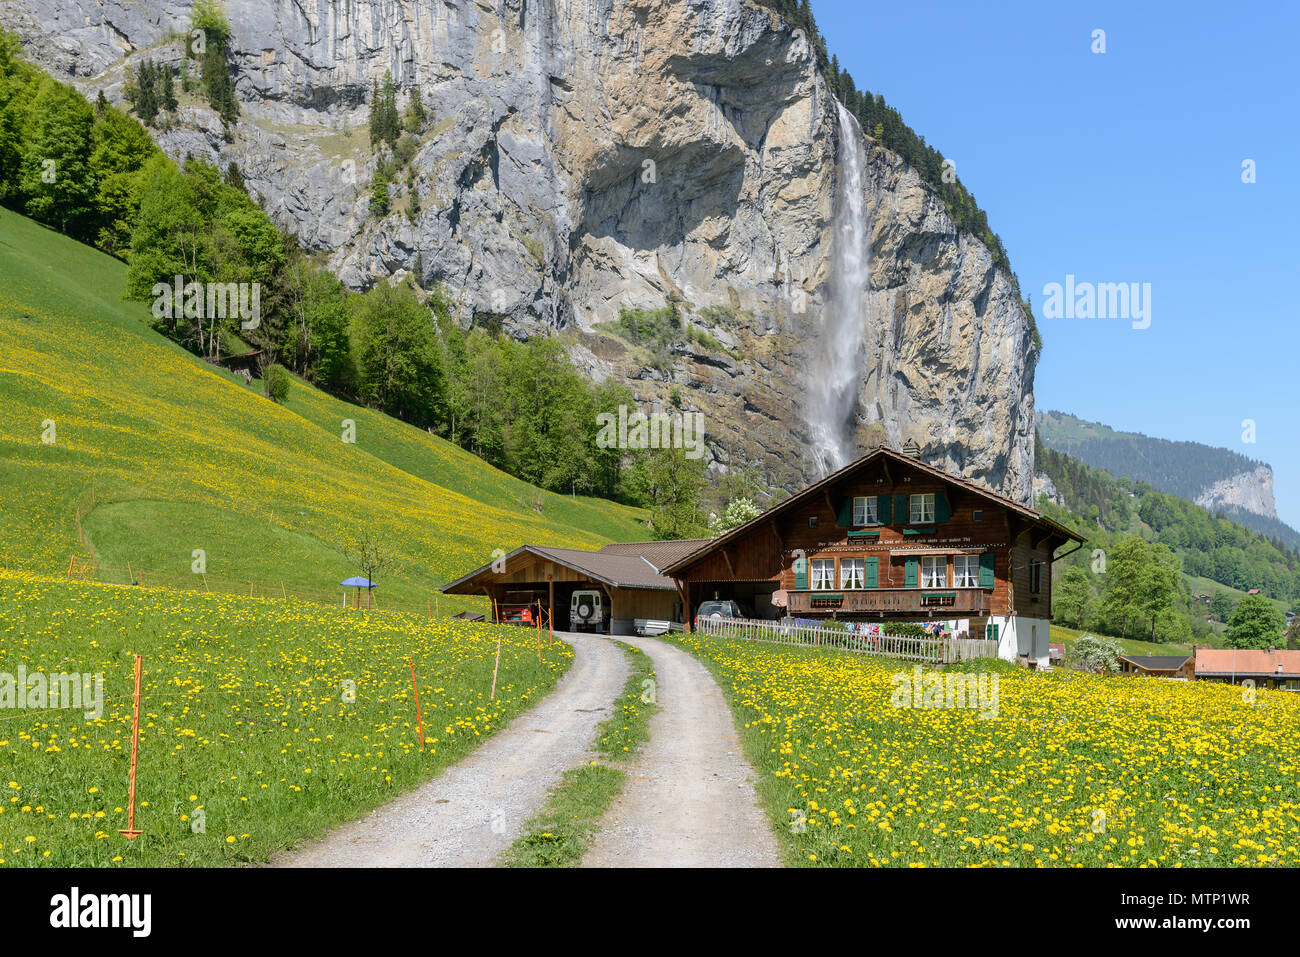 Maison de ferme traditionnelle suisse debout sur la pente sous la cascade Staubbach par temps clair en mai avec des fleurs partout Banque D'Images